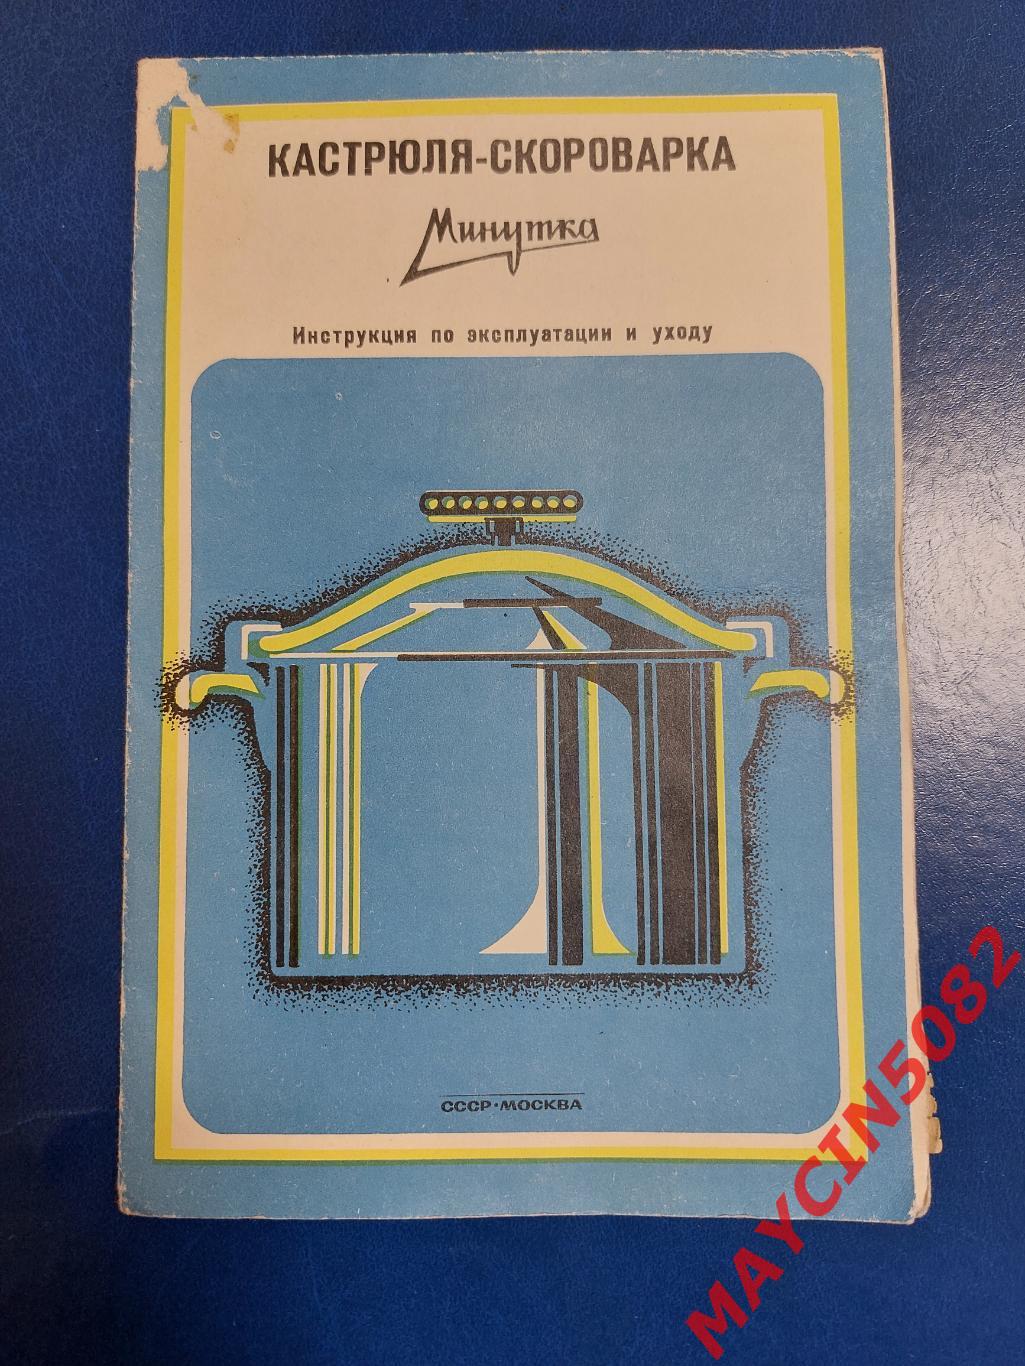 Инструкция по эксплуатации. Кастрюля-скороварка. 1978 год. Москва.